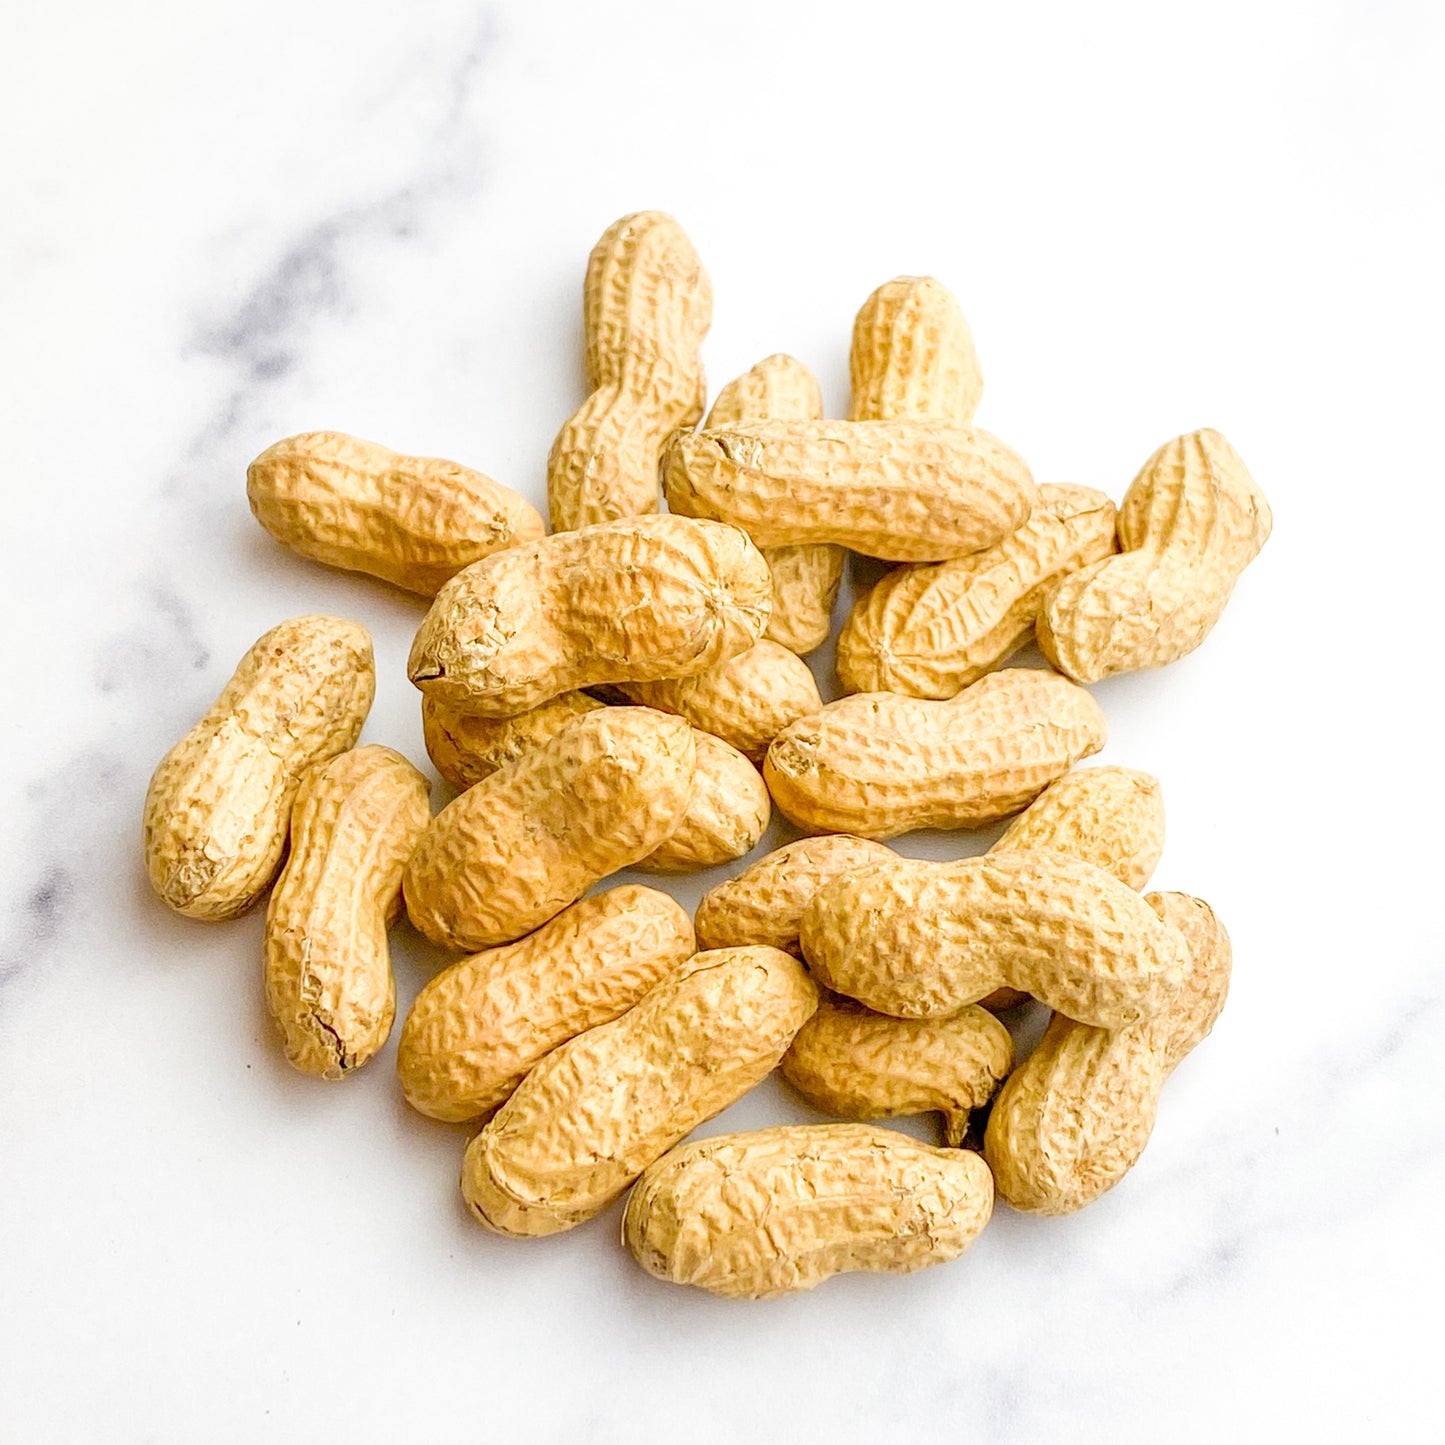 Fresh Roasted Peanuts - Light